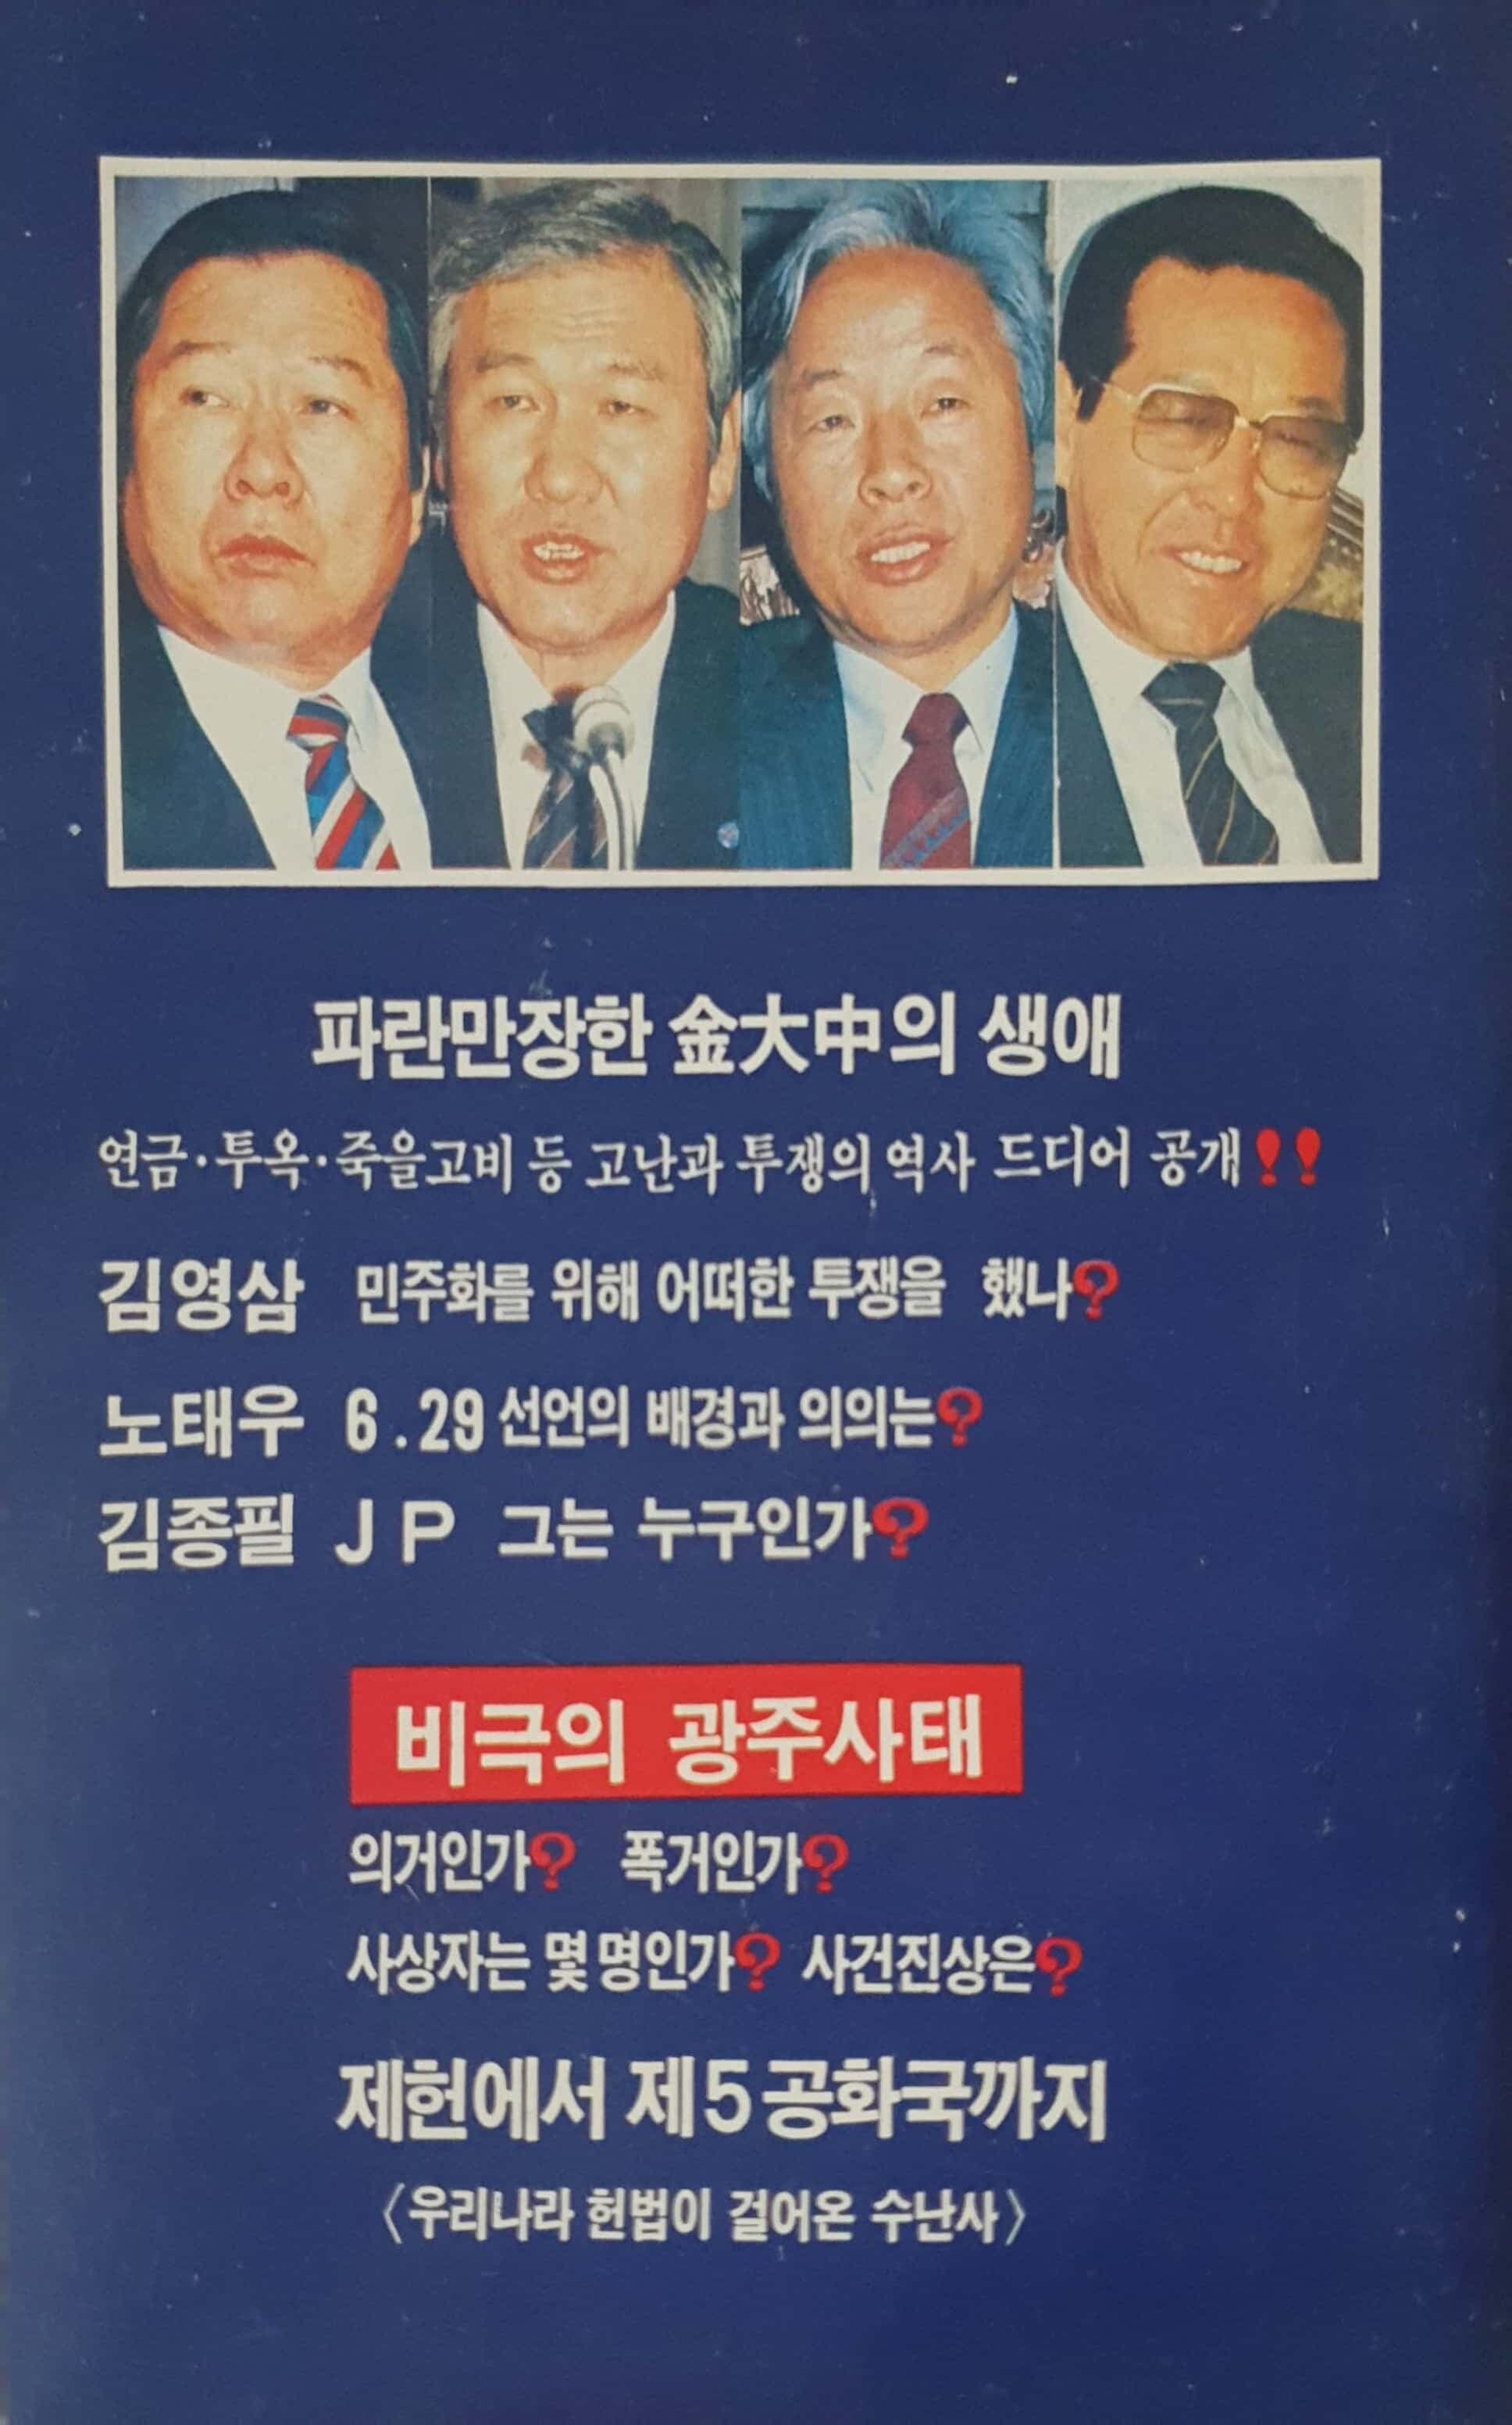 투지와 신념 - 비극의 광주사태 시말서/ 조동수 편저